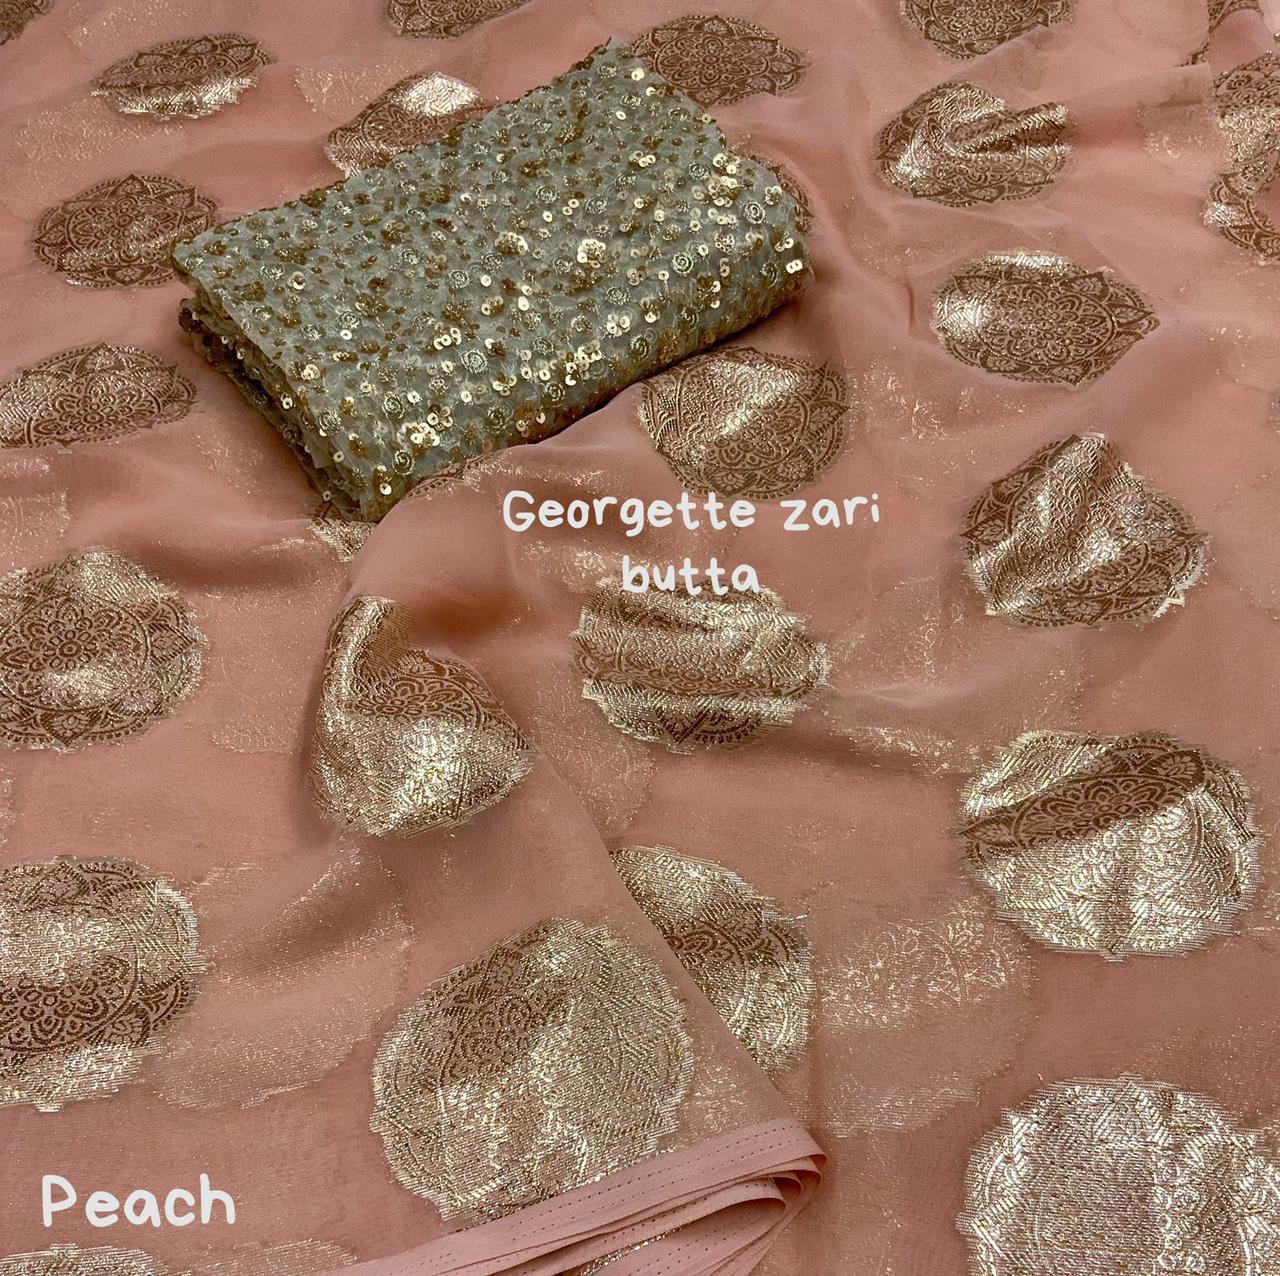 Pure Georgette Saree with gold zari weaving motifs - Peach